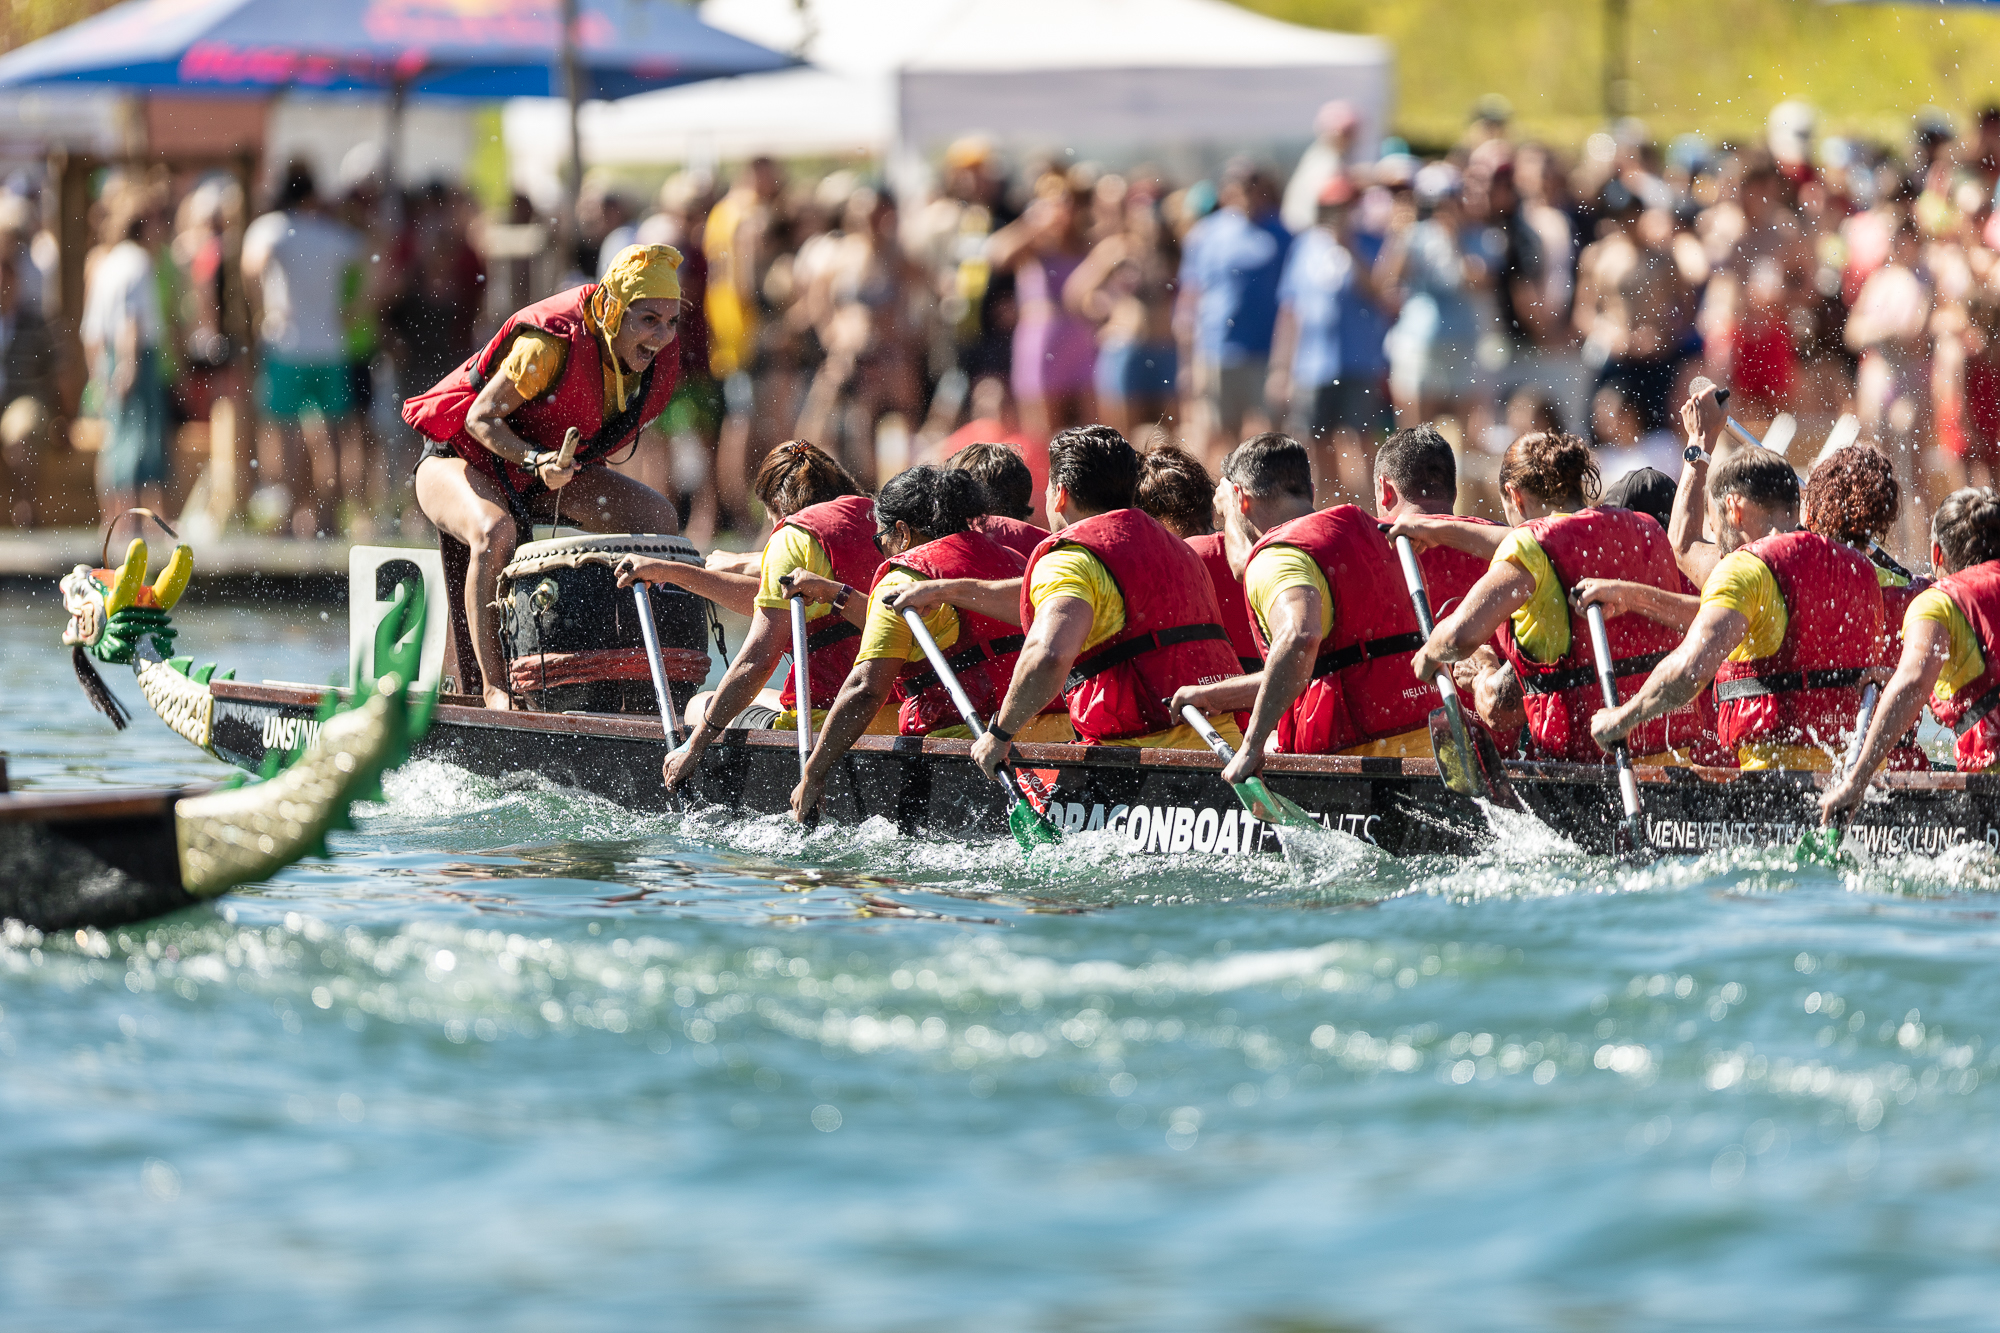 Drachenbootrennen am Züri Fäscht Festival in Zürich